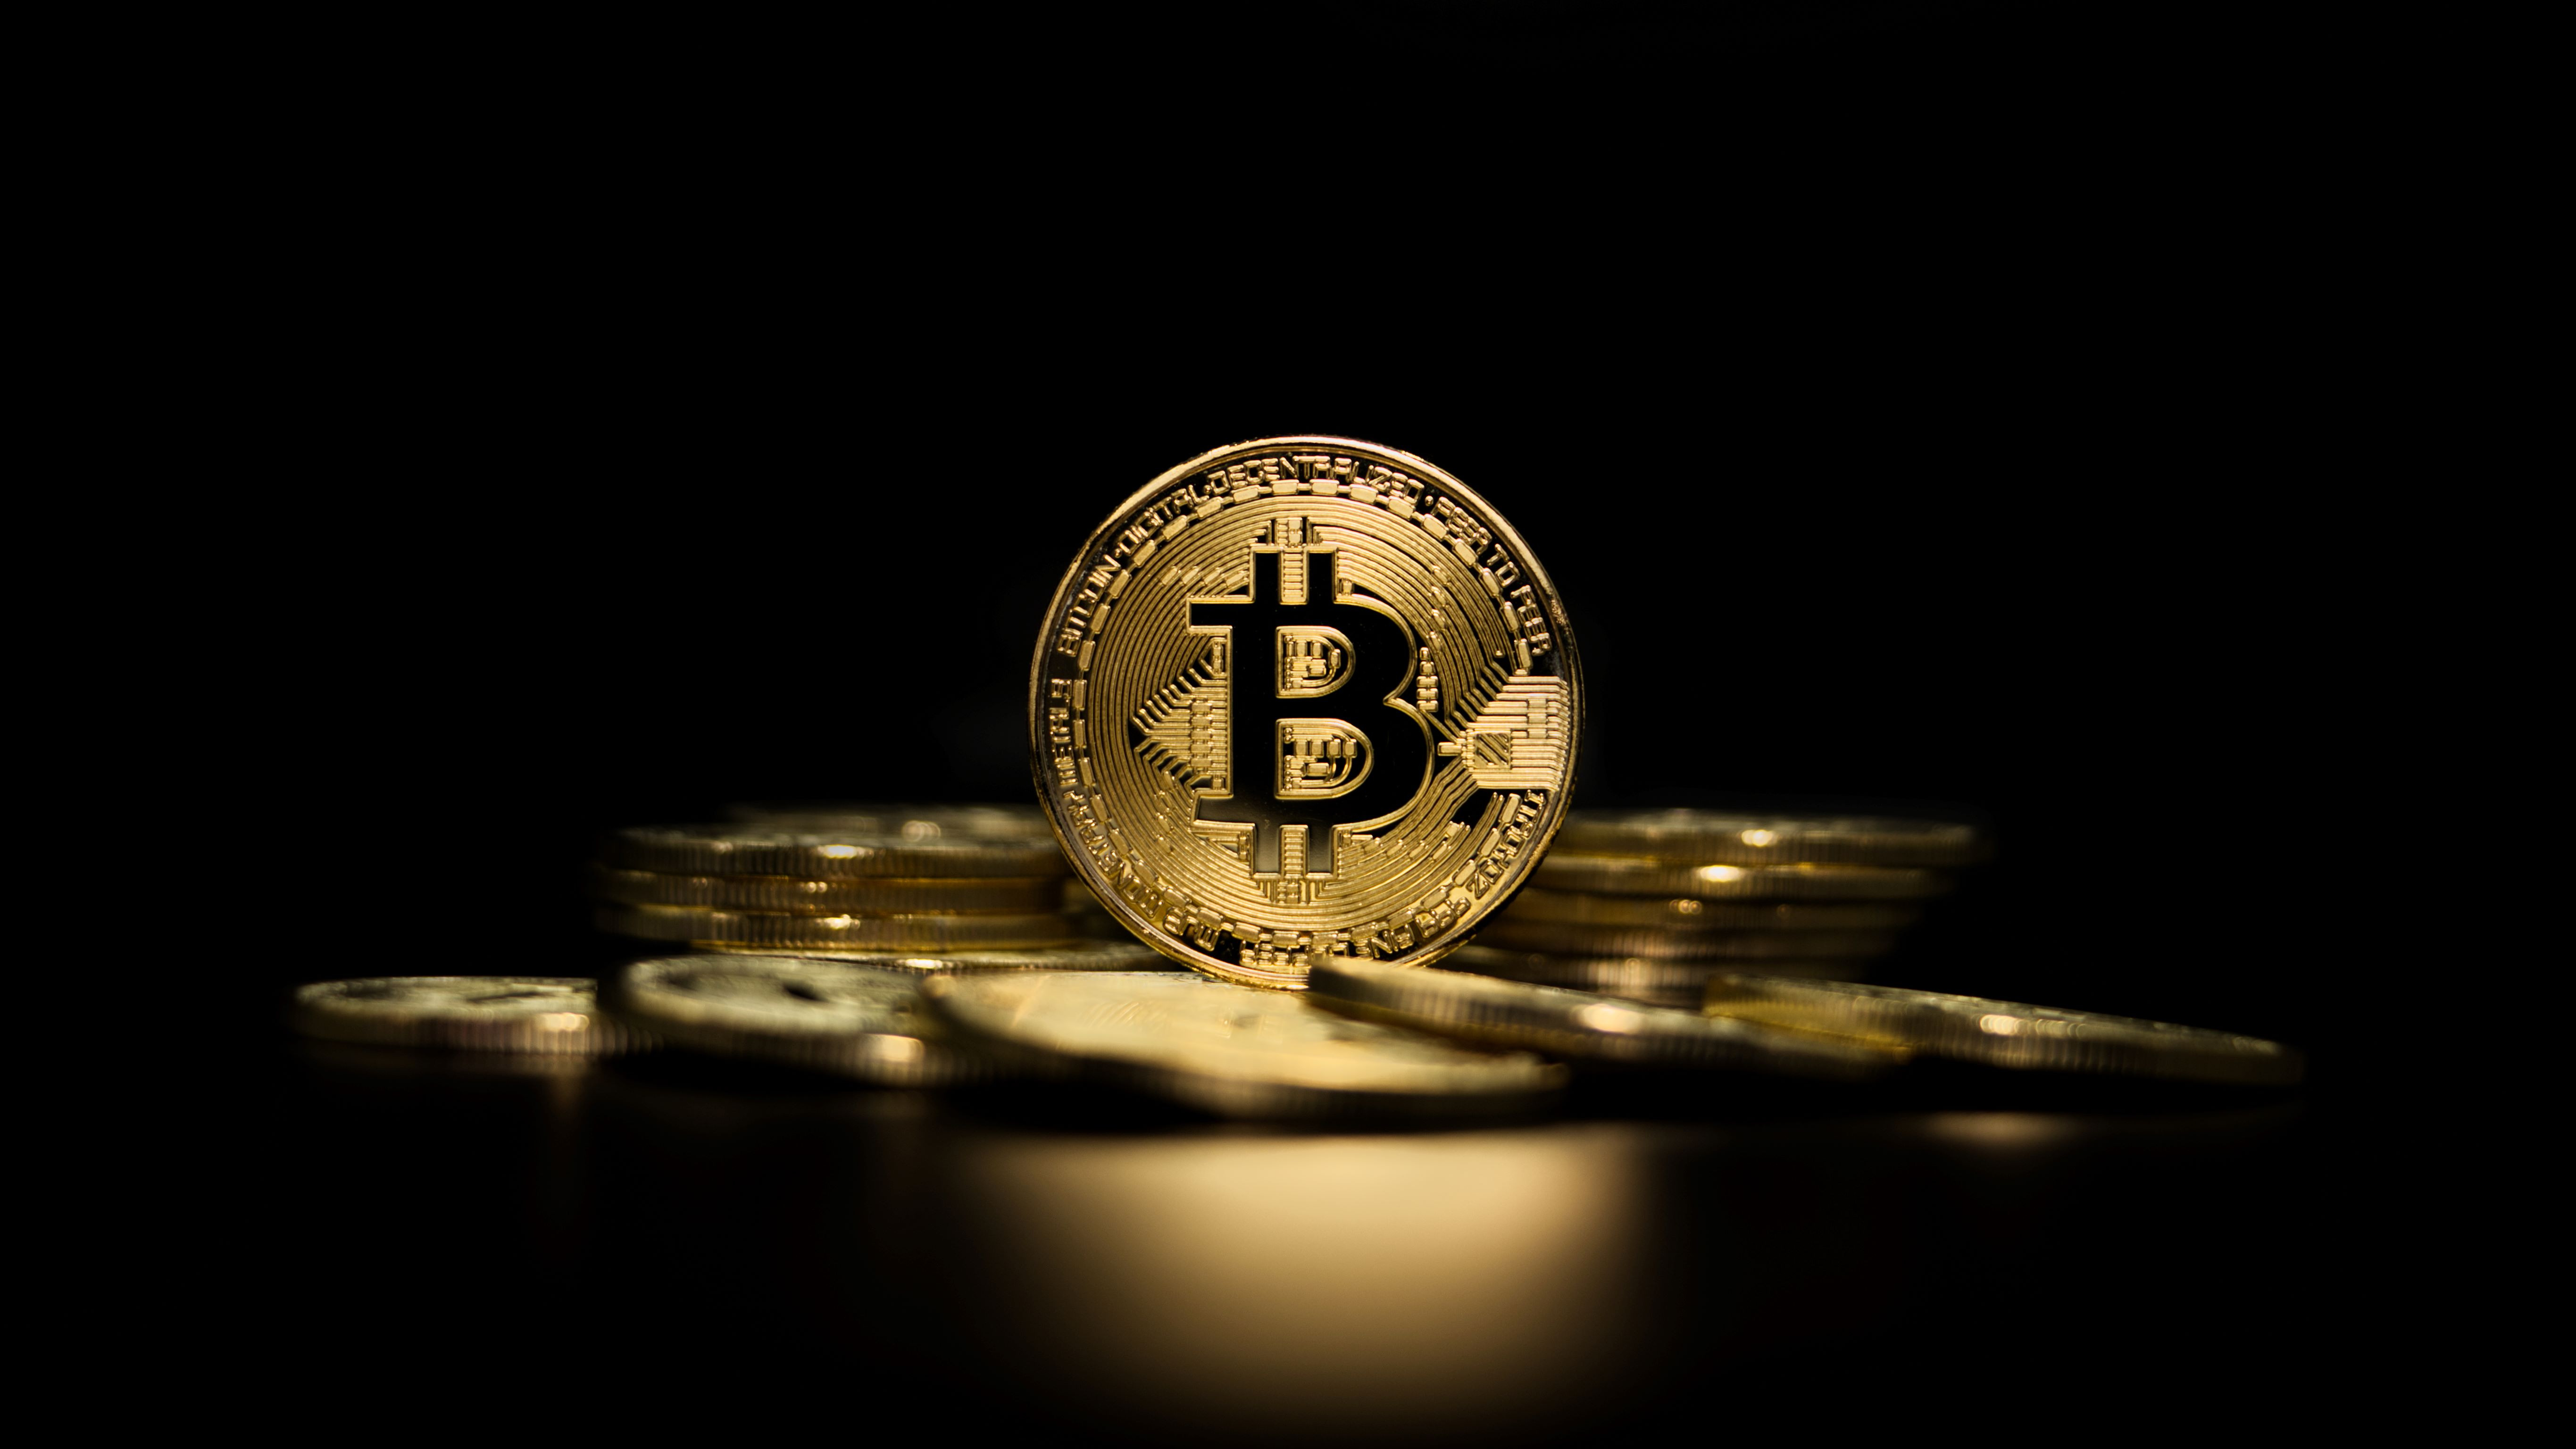 Bitcoin v 2021: Kryptomena s inštitucionálnym krytím